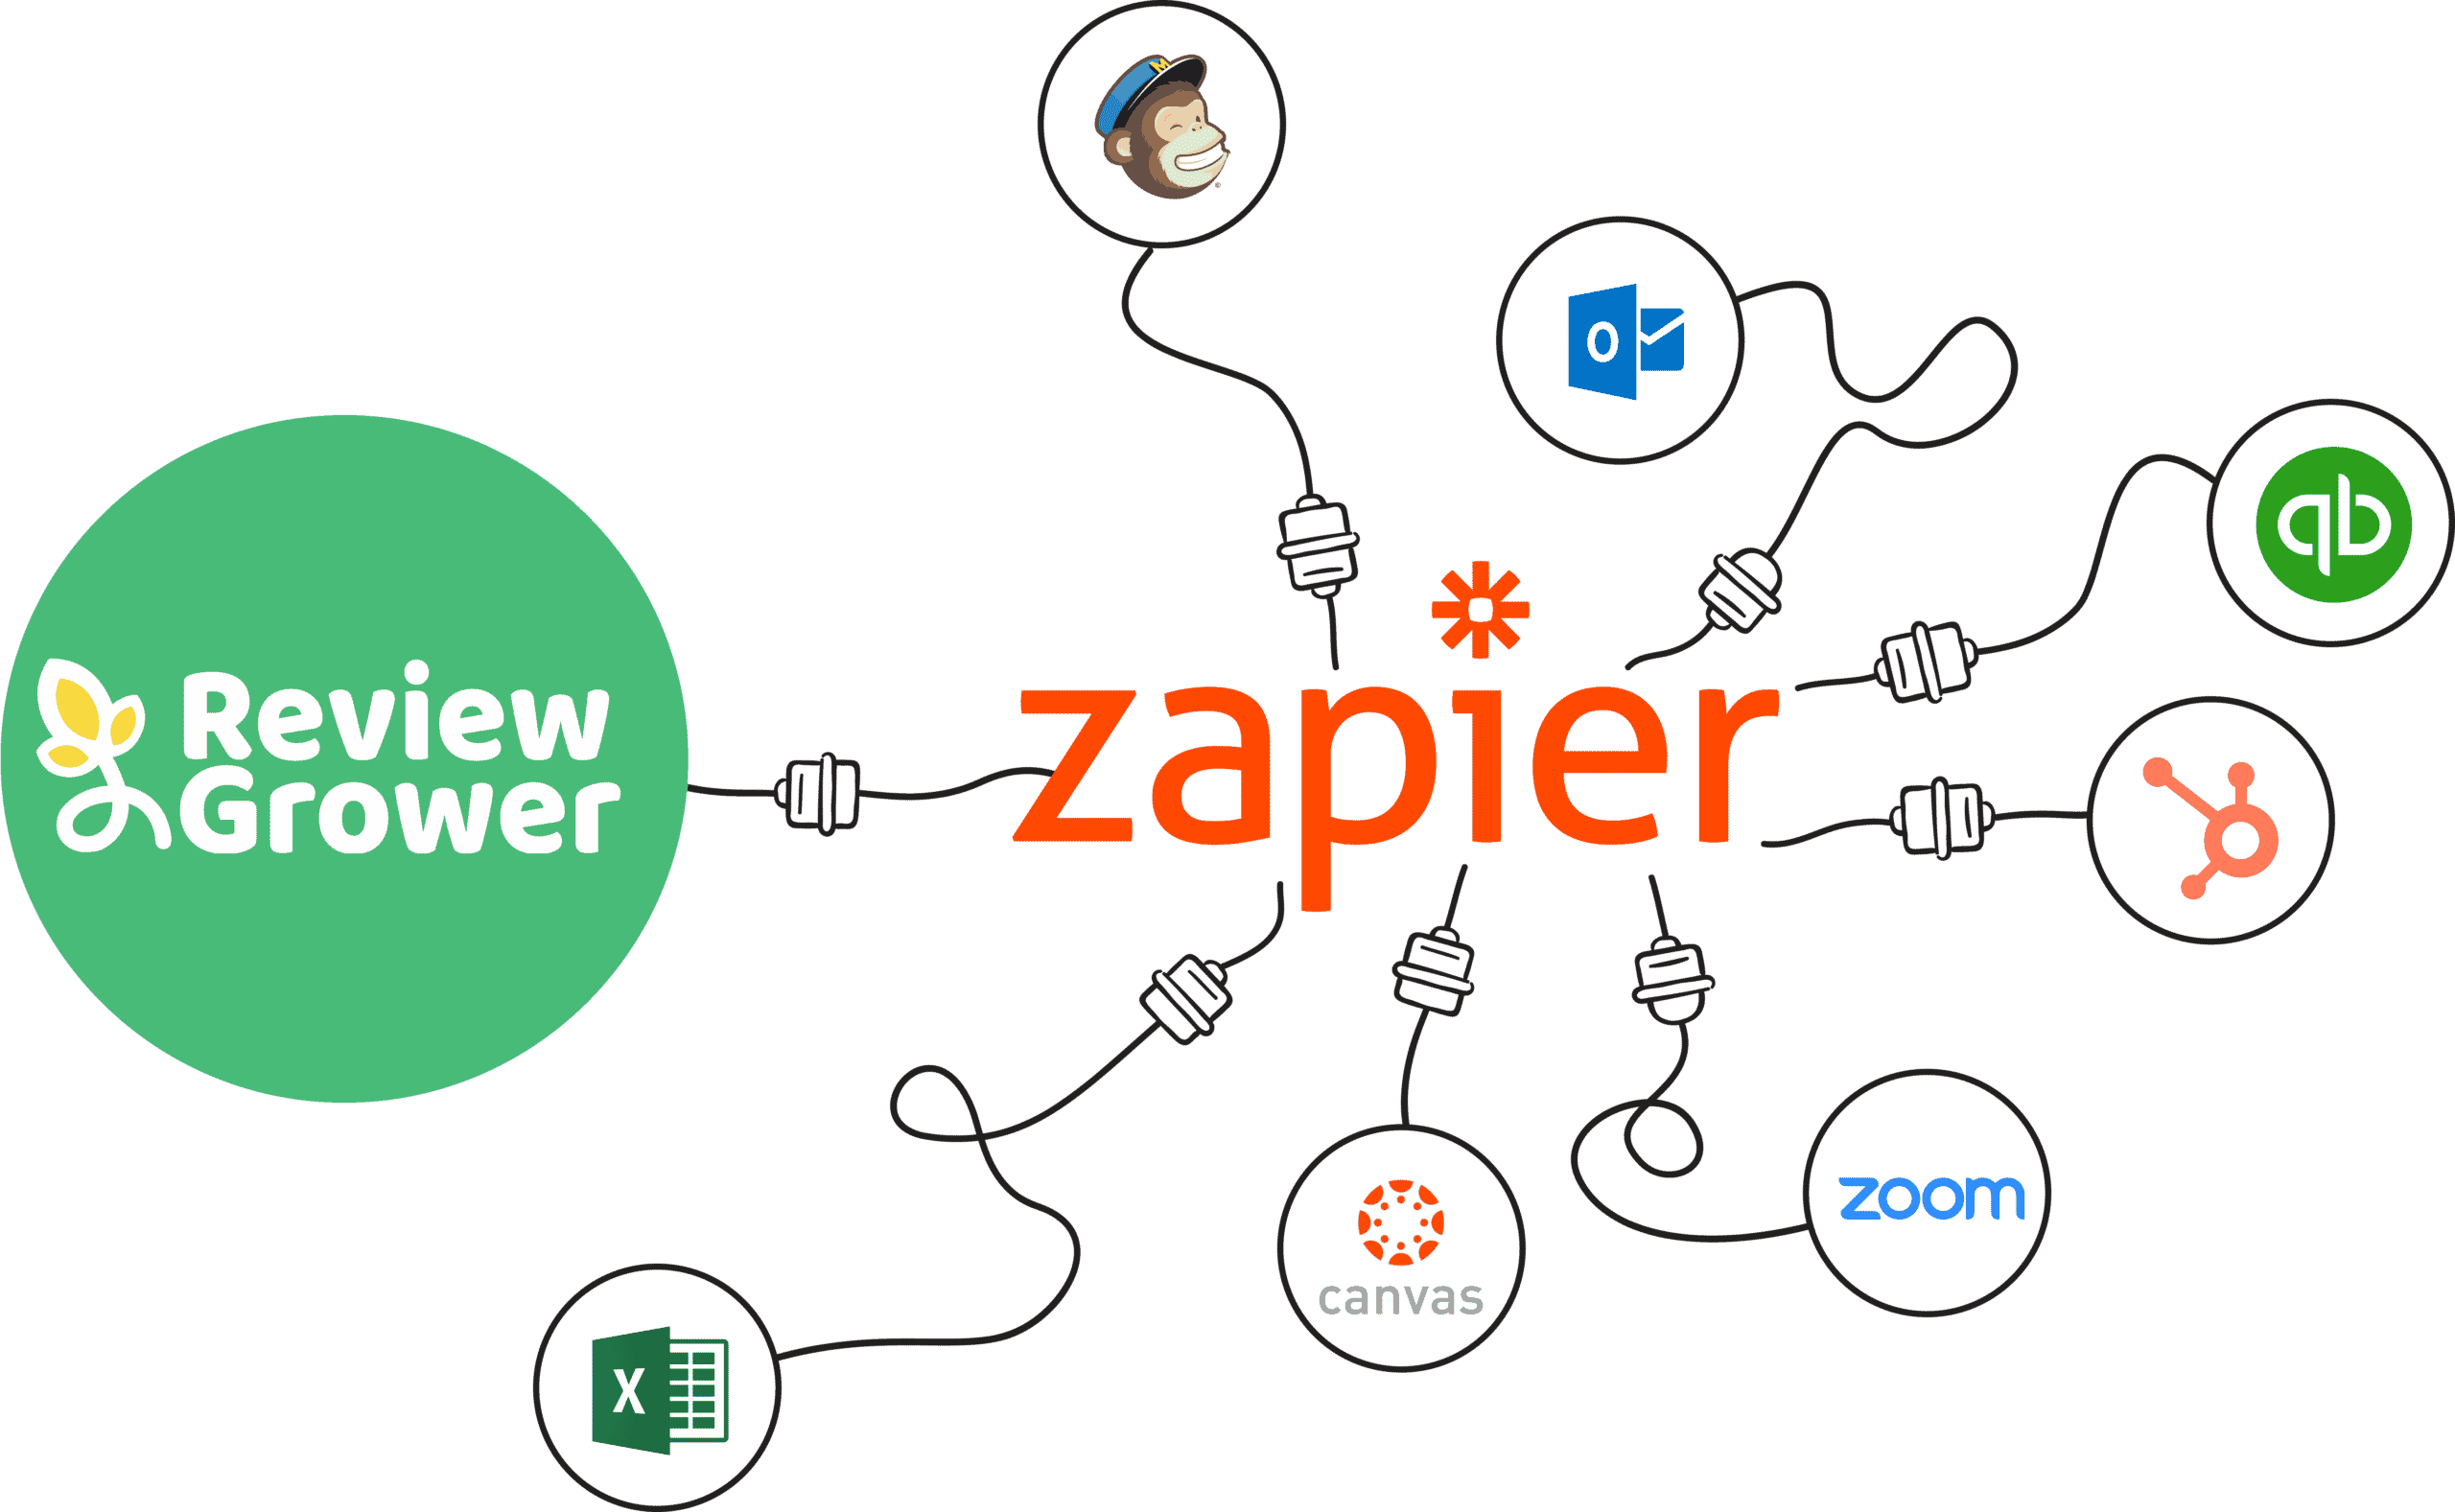 Zapier integration Review Grower